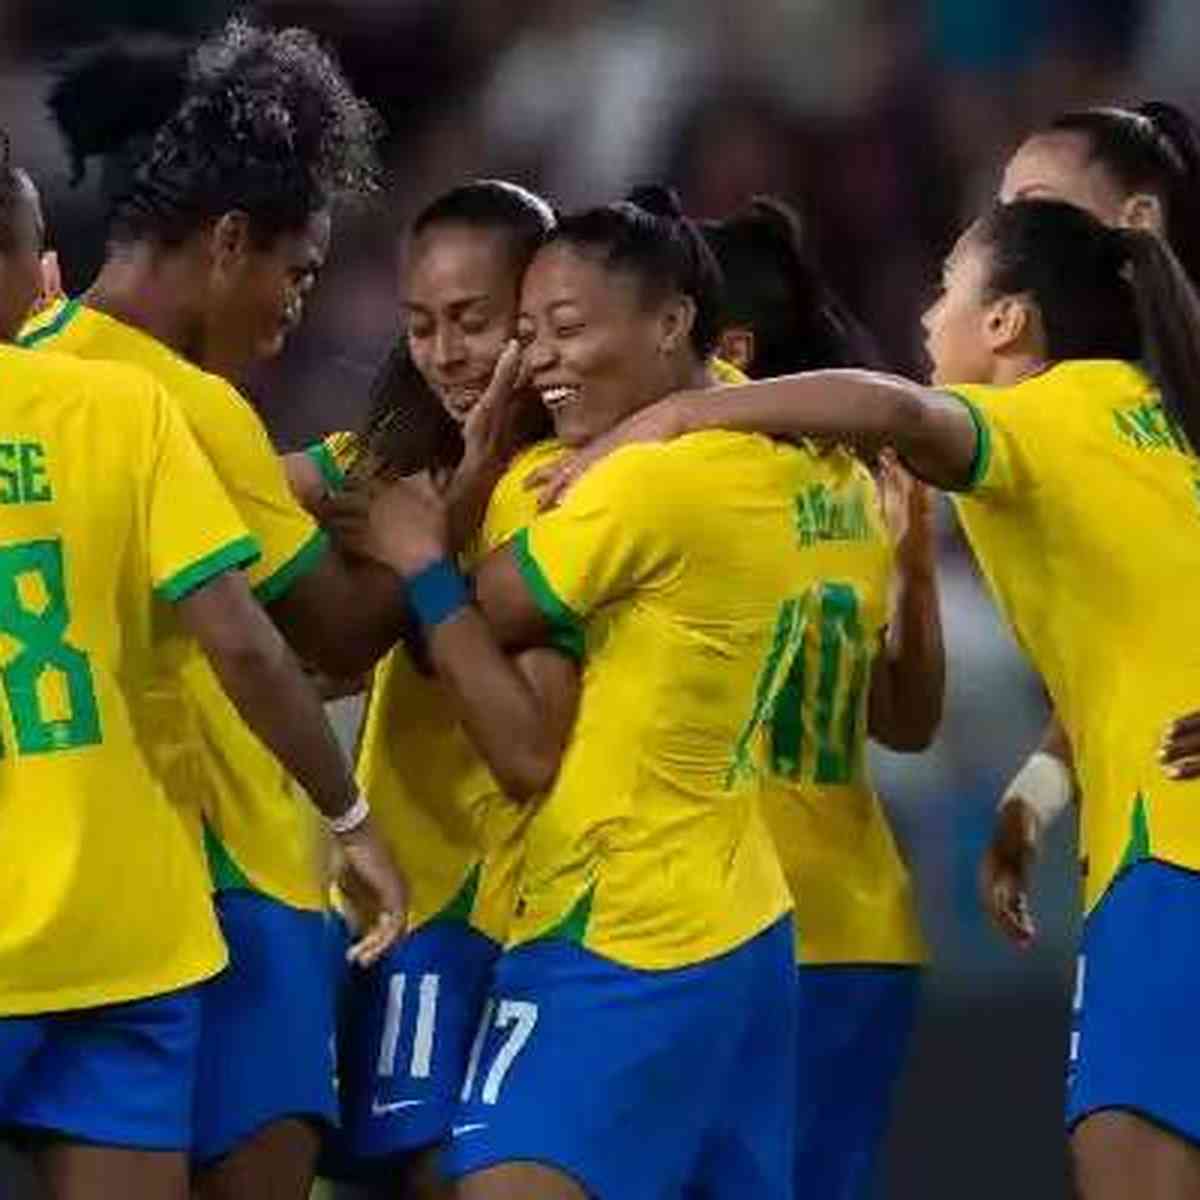 Futebol feminino no Brasil – Wikipédia, a enciclopédia livre